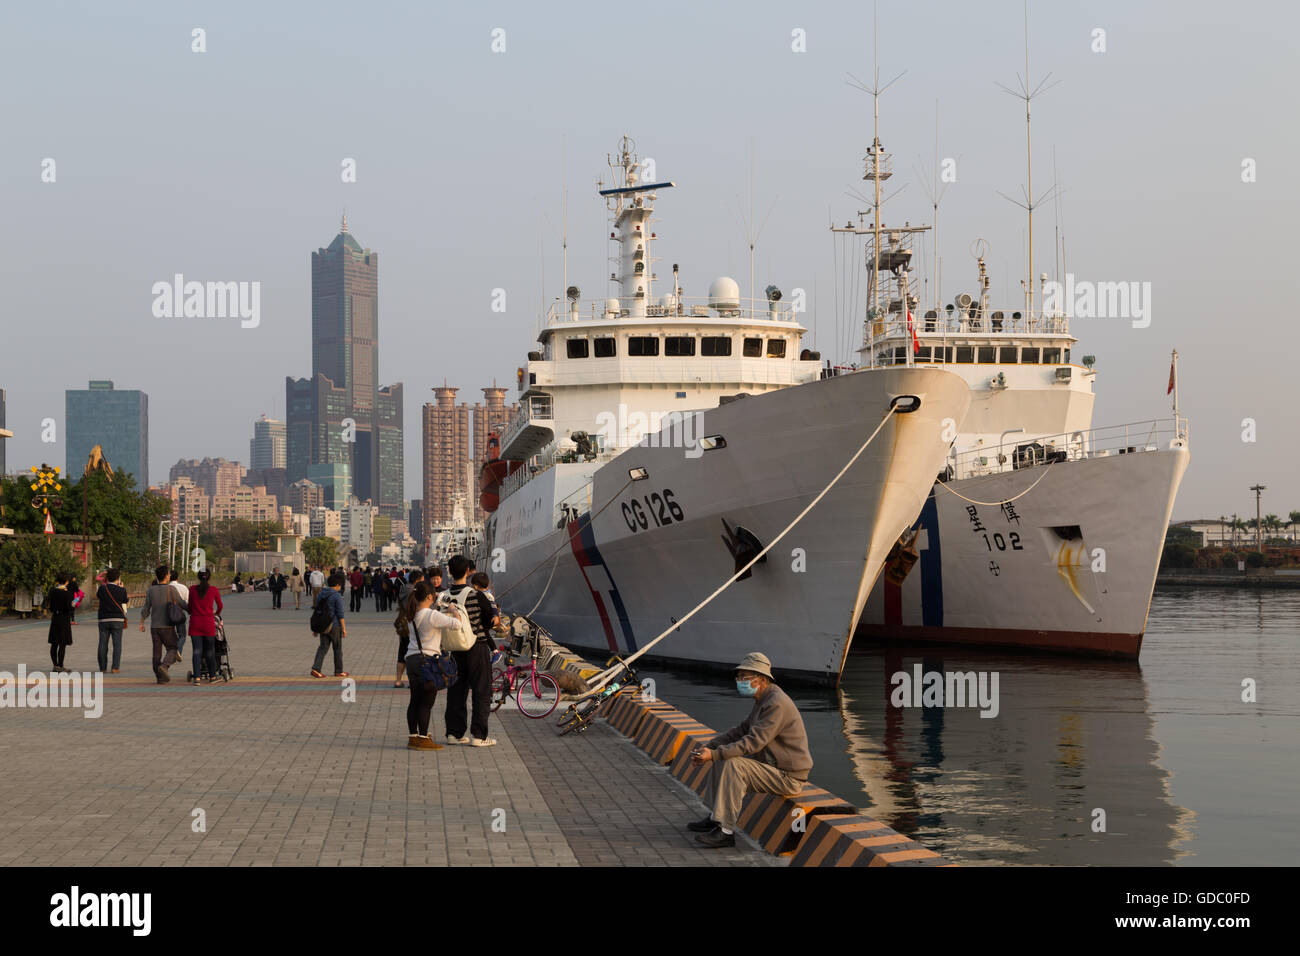 Kaohsiung, Taiwán - Enero 11, 2015: la gente en la parte frontal del puerto con los barcos anclados Foto de stock